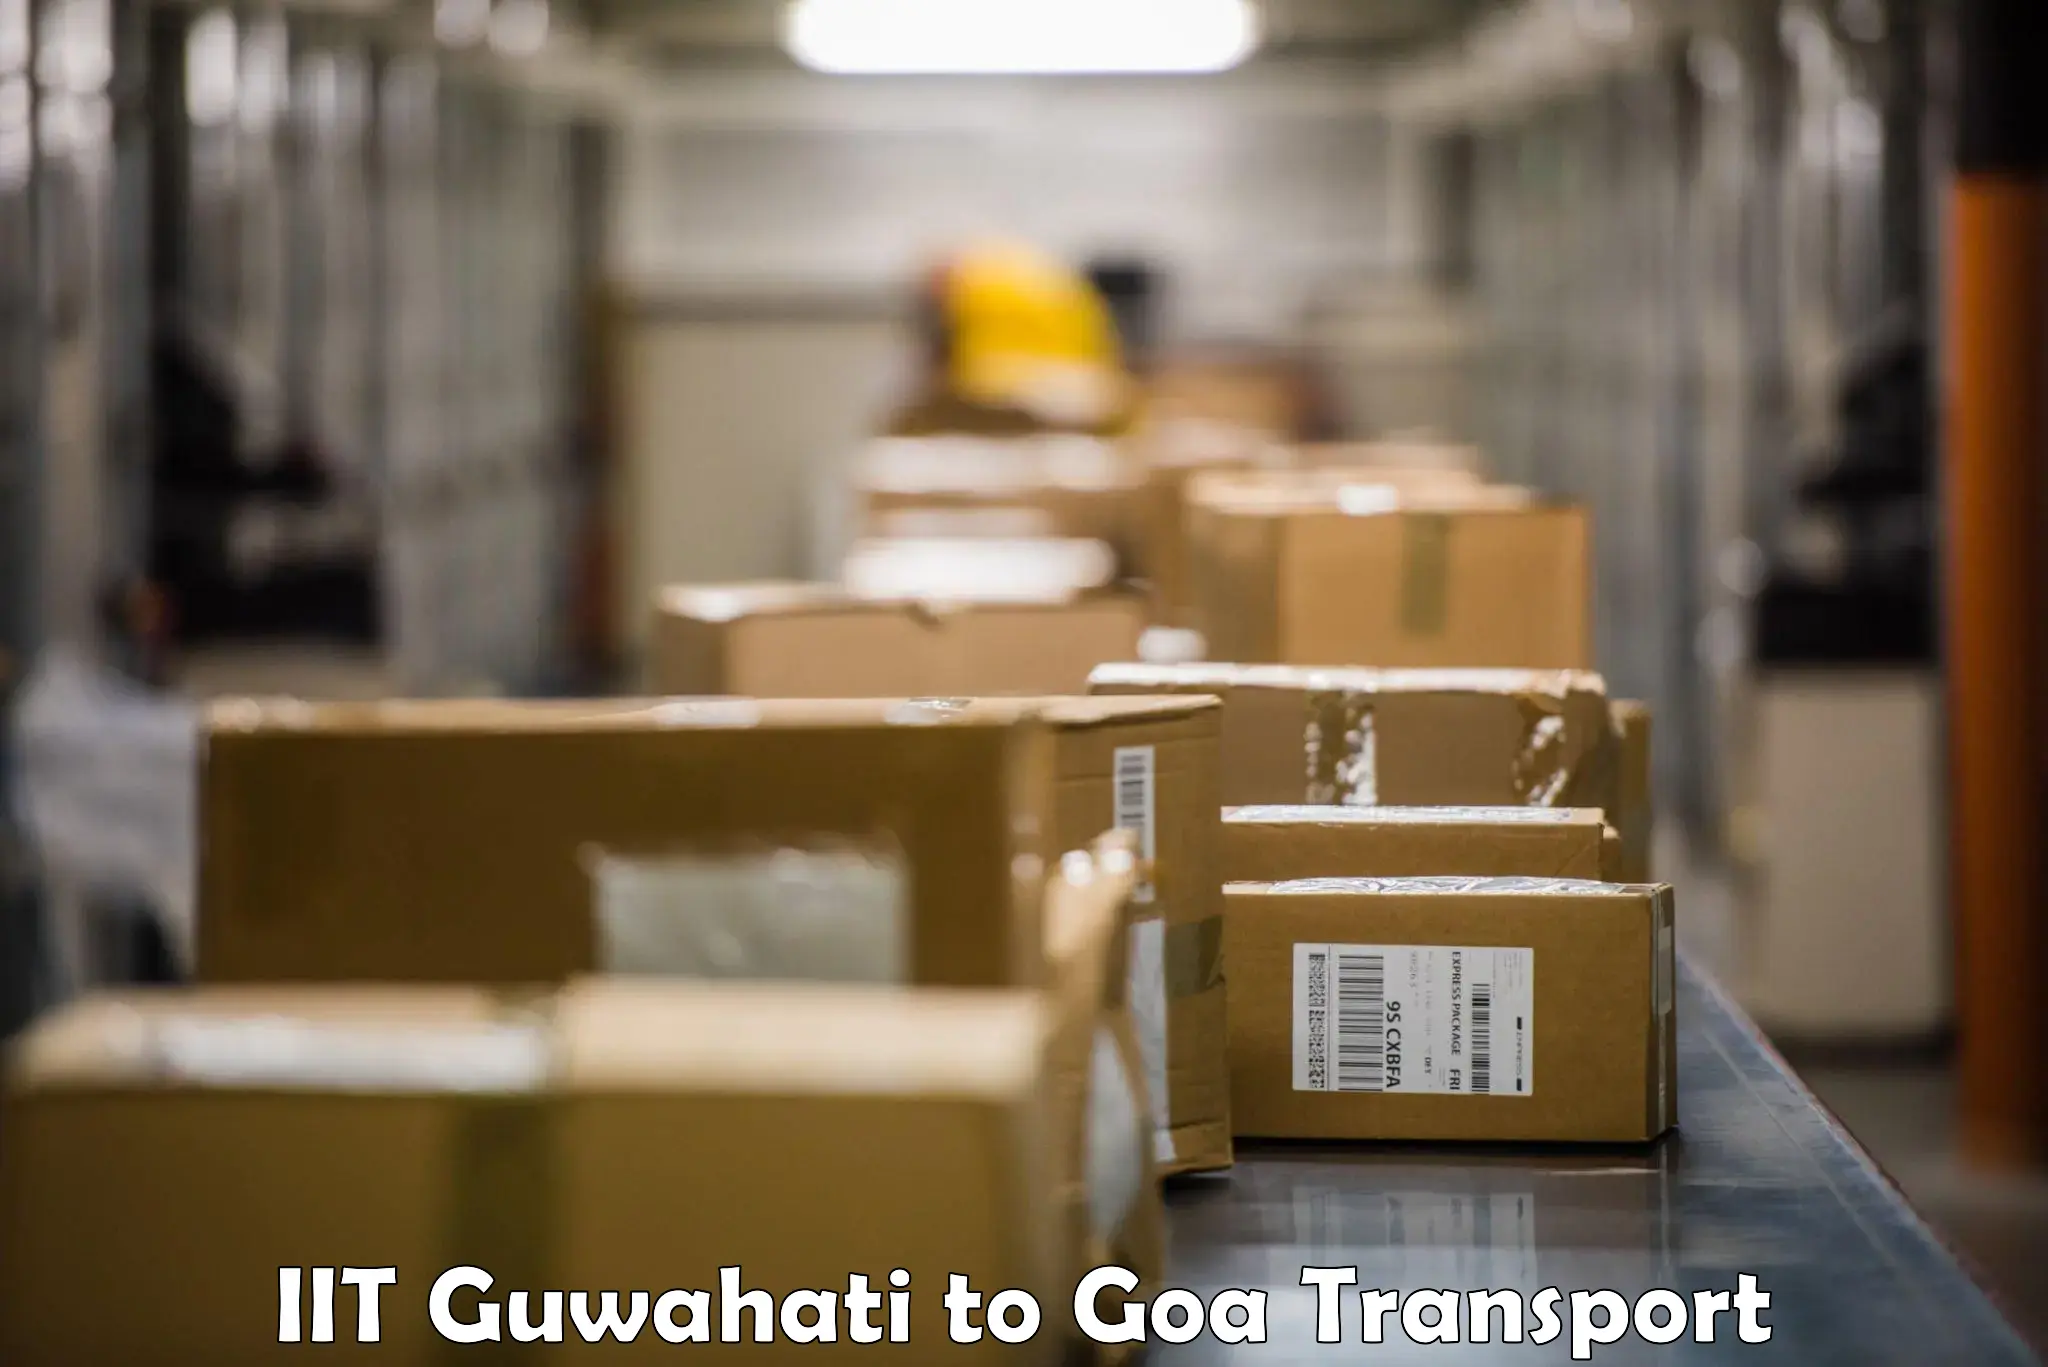 Luggage transport services IIT Guwahati to Panaji